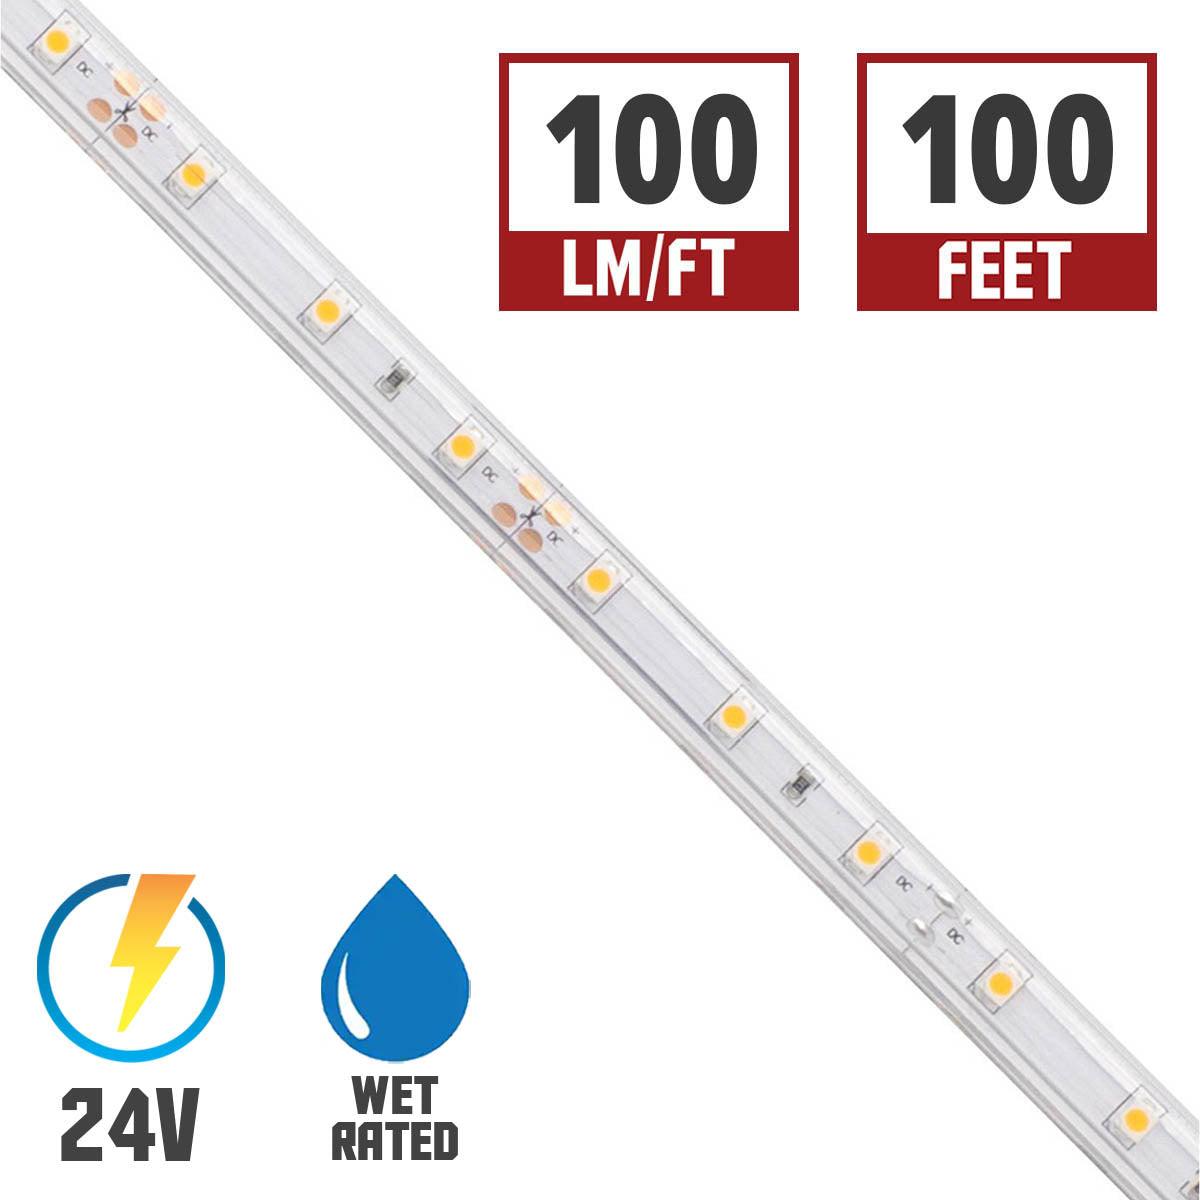 BLAZE Wet Location LED Strip Light, 2700K, 100+ Lumens per Ft, 24V